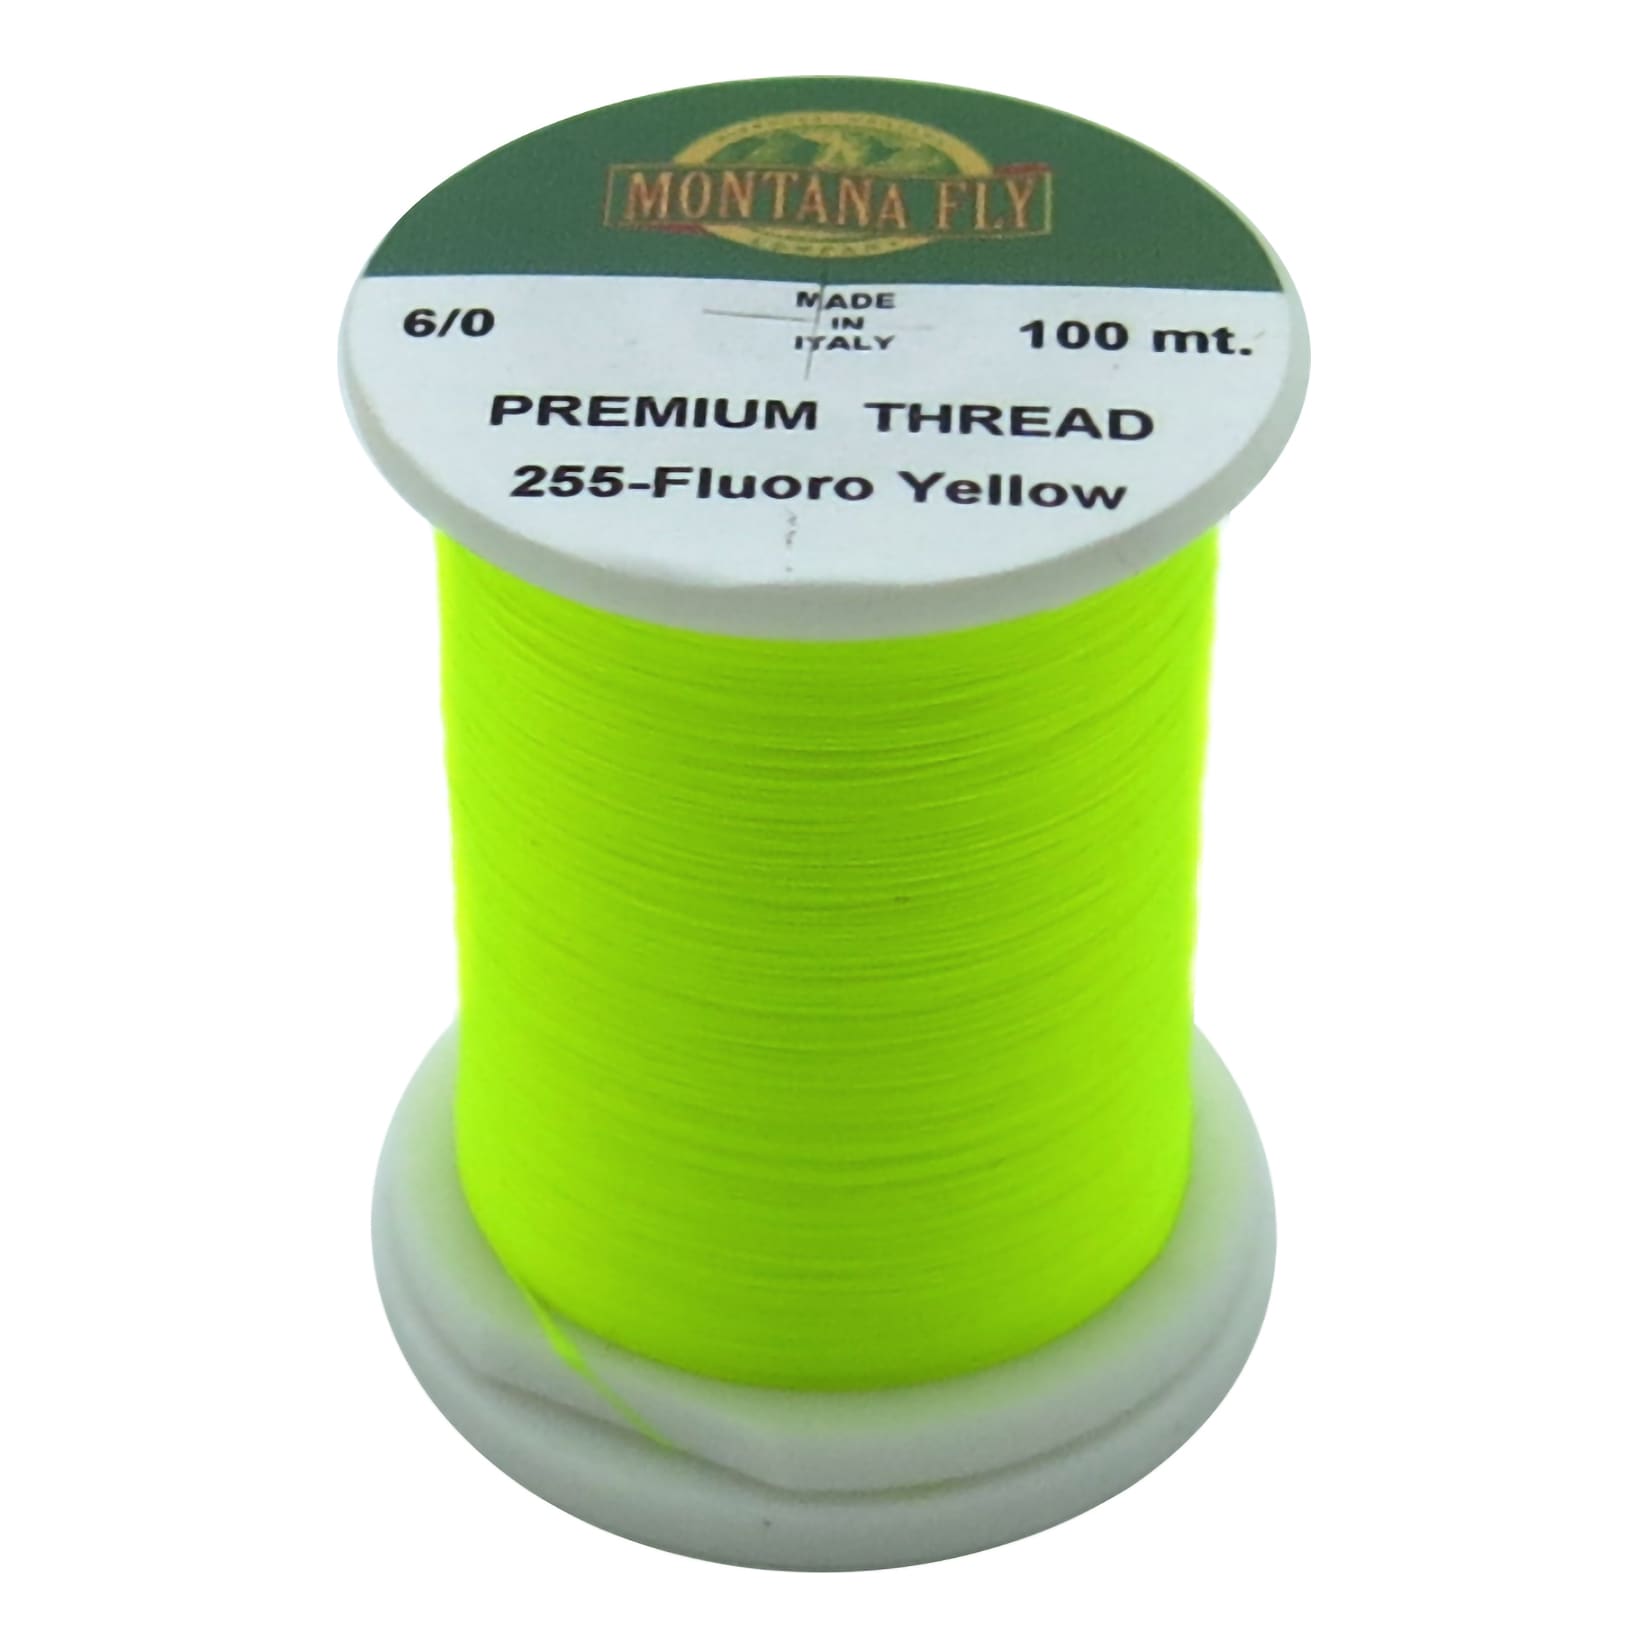 Montana Fly Company Fly Tying Thread - 6/0 - Fluorescent Yellow